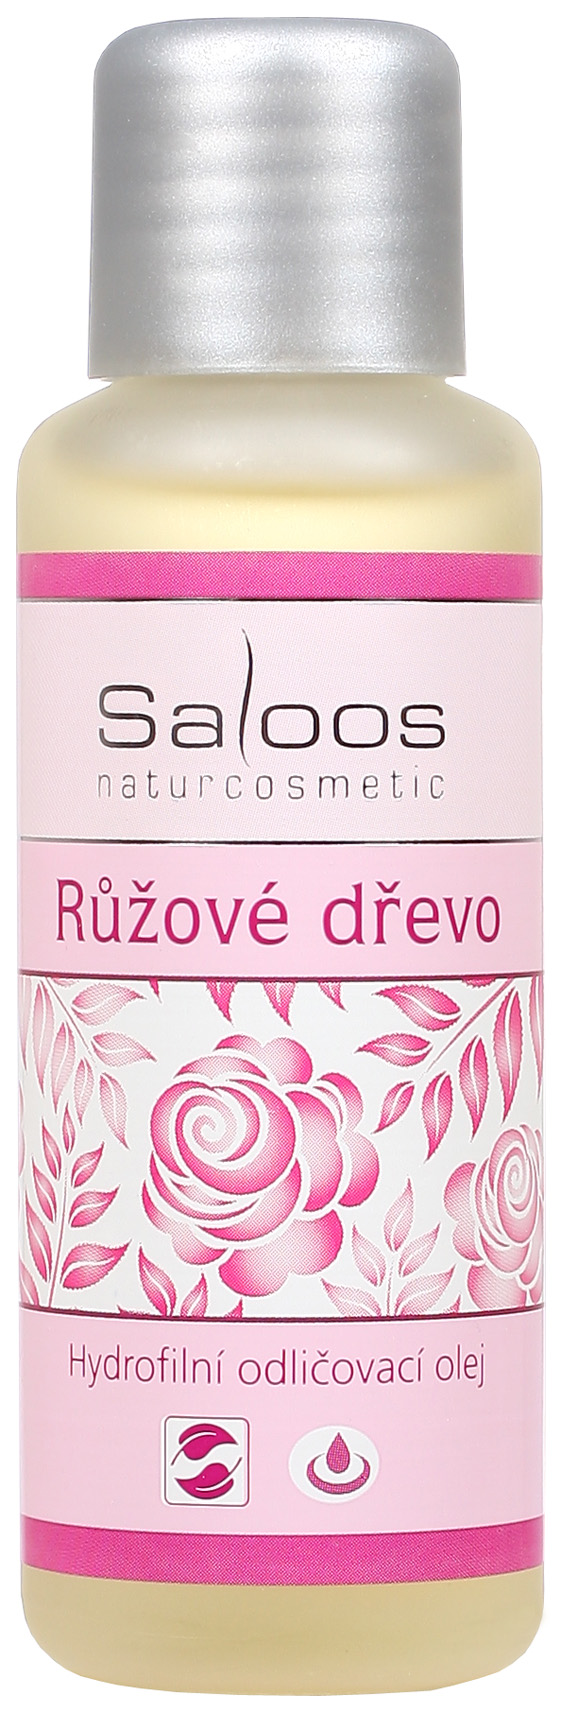 Saloos Růžové dřevo hydrofilní odličovací olej Balení: 50 ml